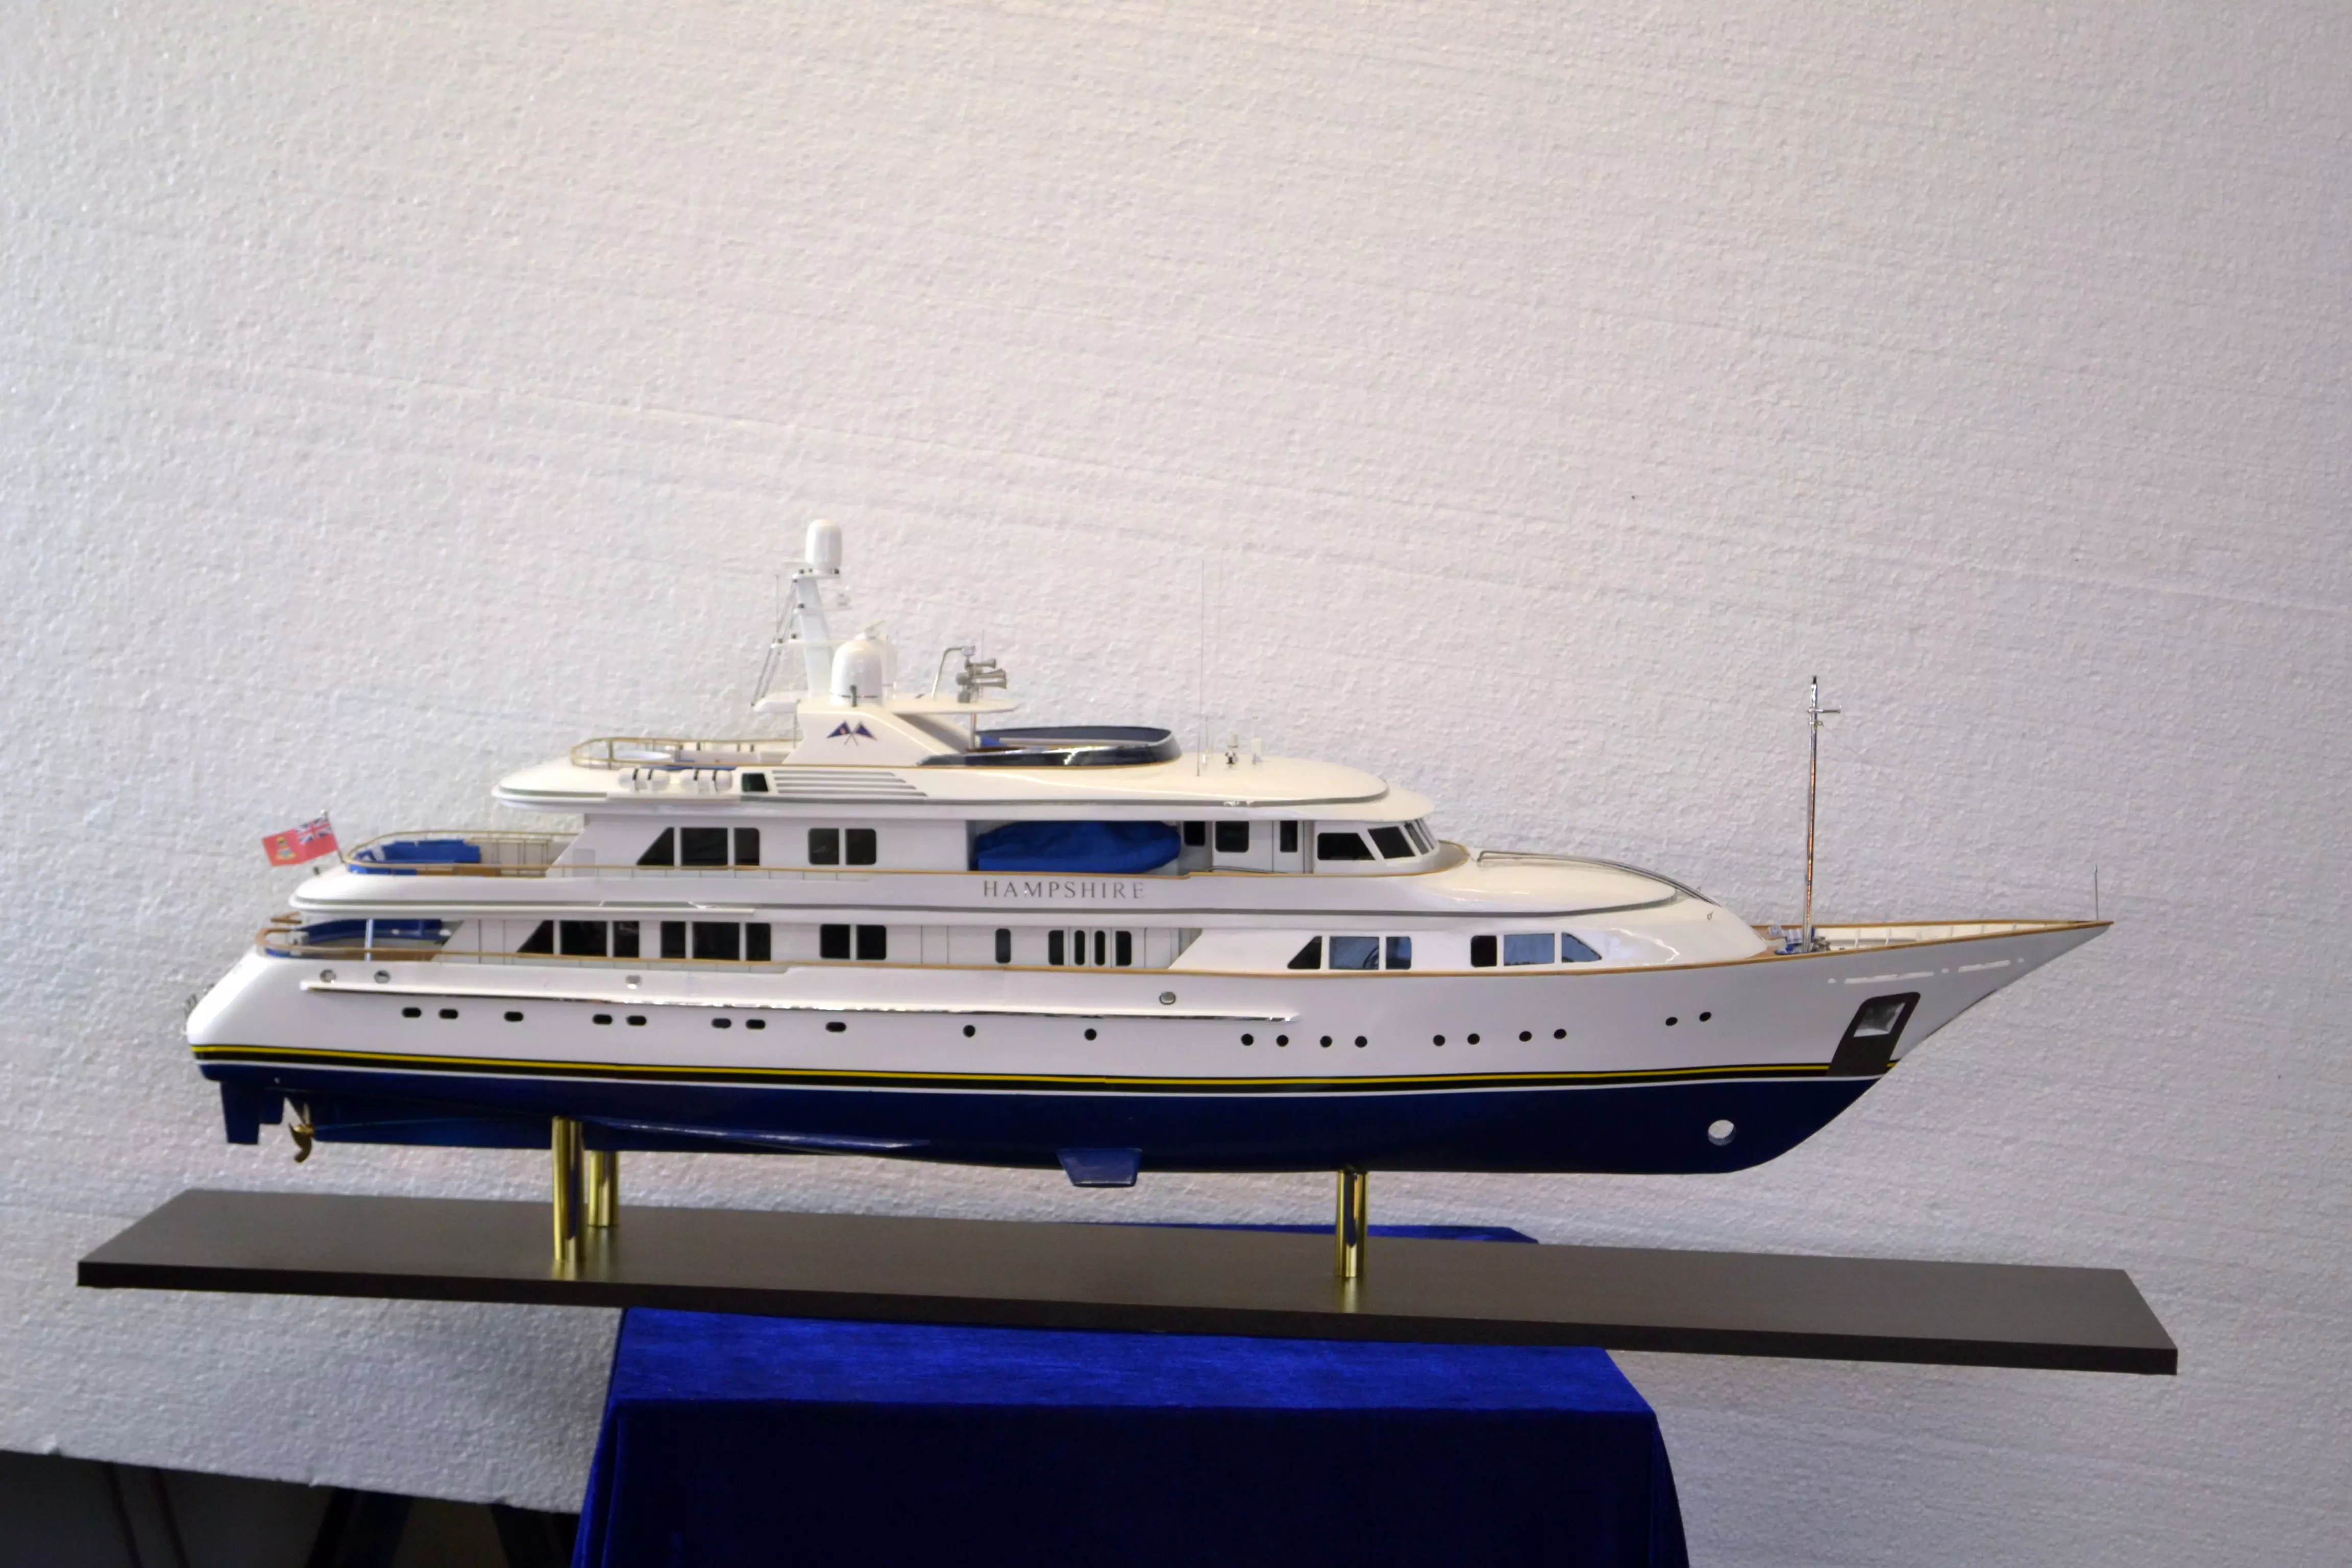 model yachts uk